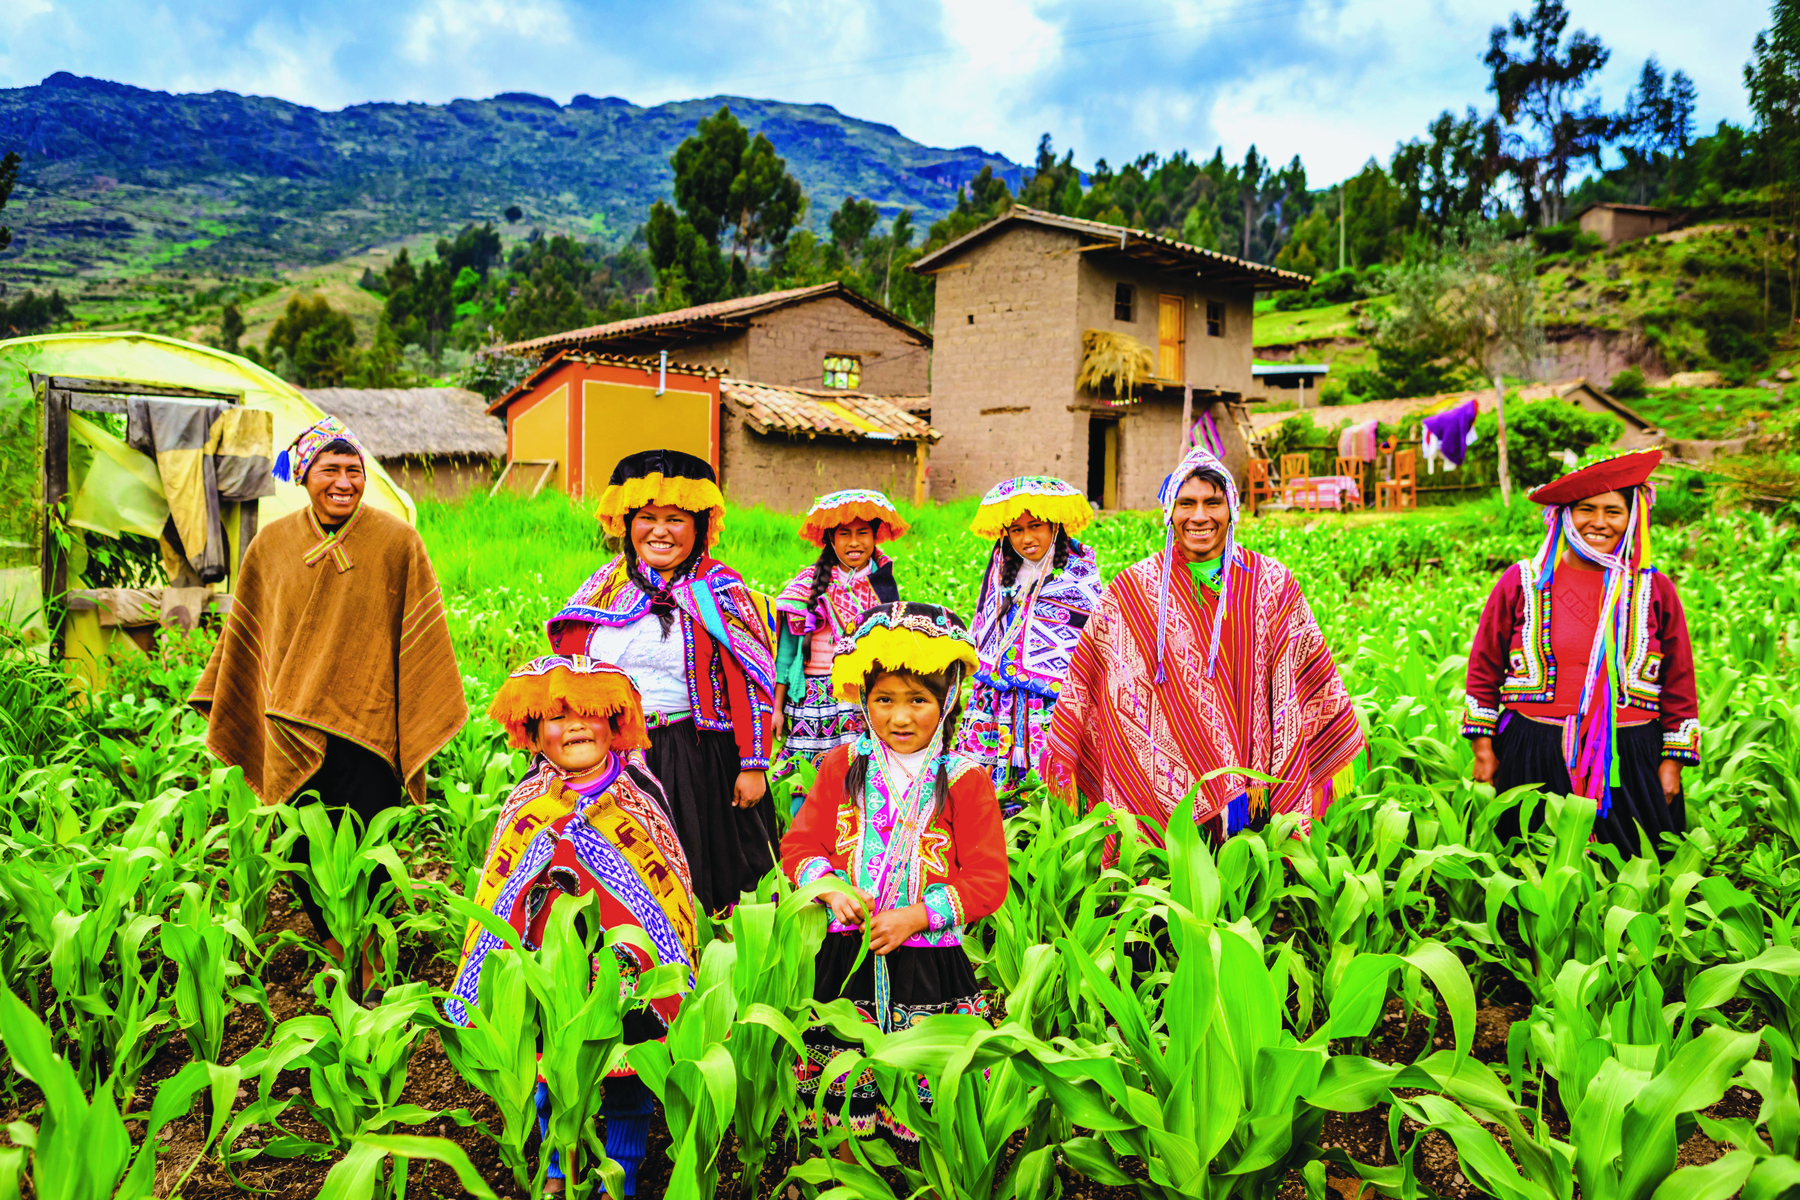 Fotografia. Um conjunto de adultos e crianças no meio de uma plantação, todos vestindo túnicas e capas coloridas e chapéus largos. Em segundo plano há casas de tijolos com tetos triangulares.